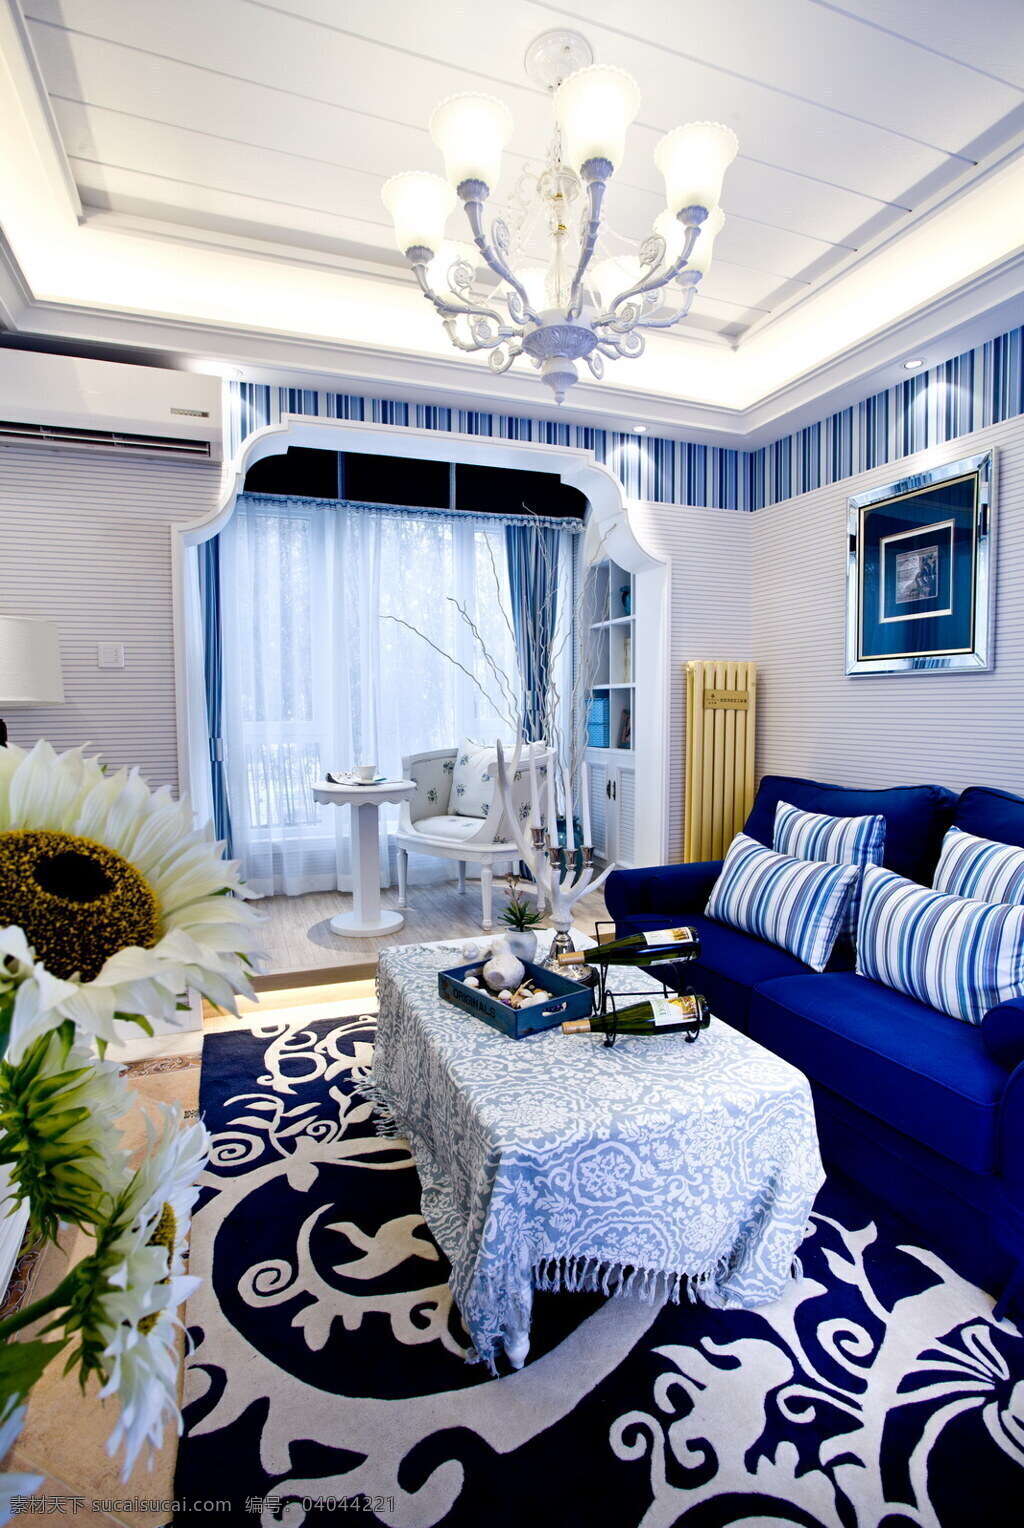 田园 风 蓝色 客厅 背景 墙 设计图 家居 家居生活 室内设计 装修 室内 家具 装修设计 环境设计 背景墙 沙发